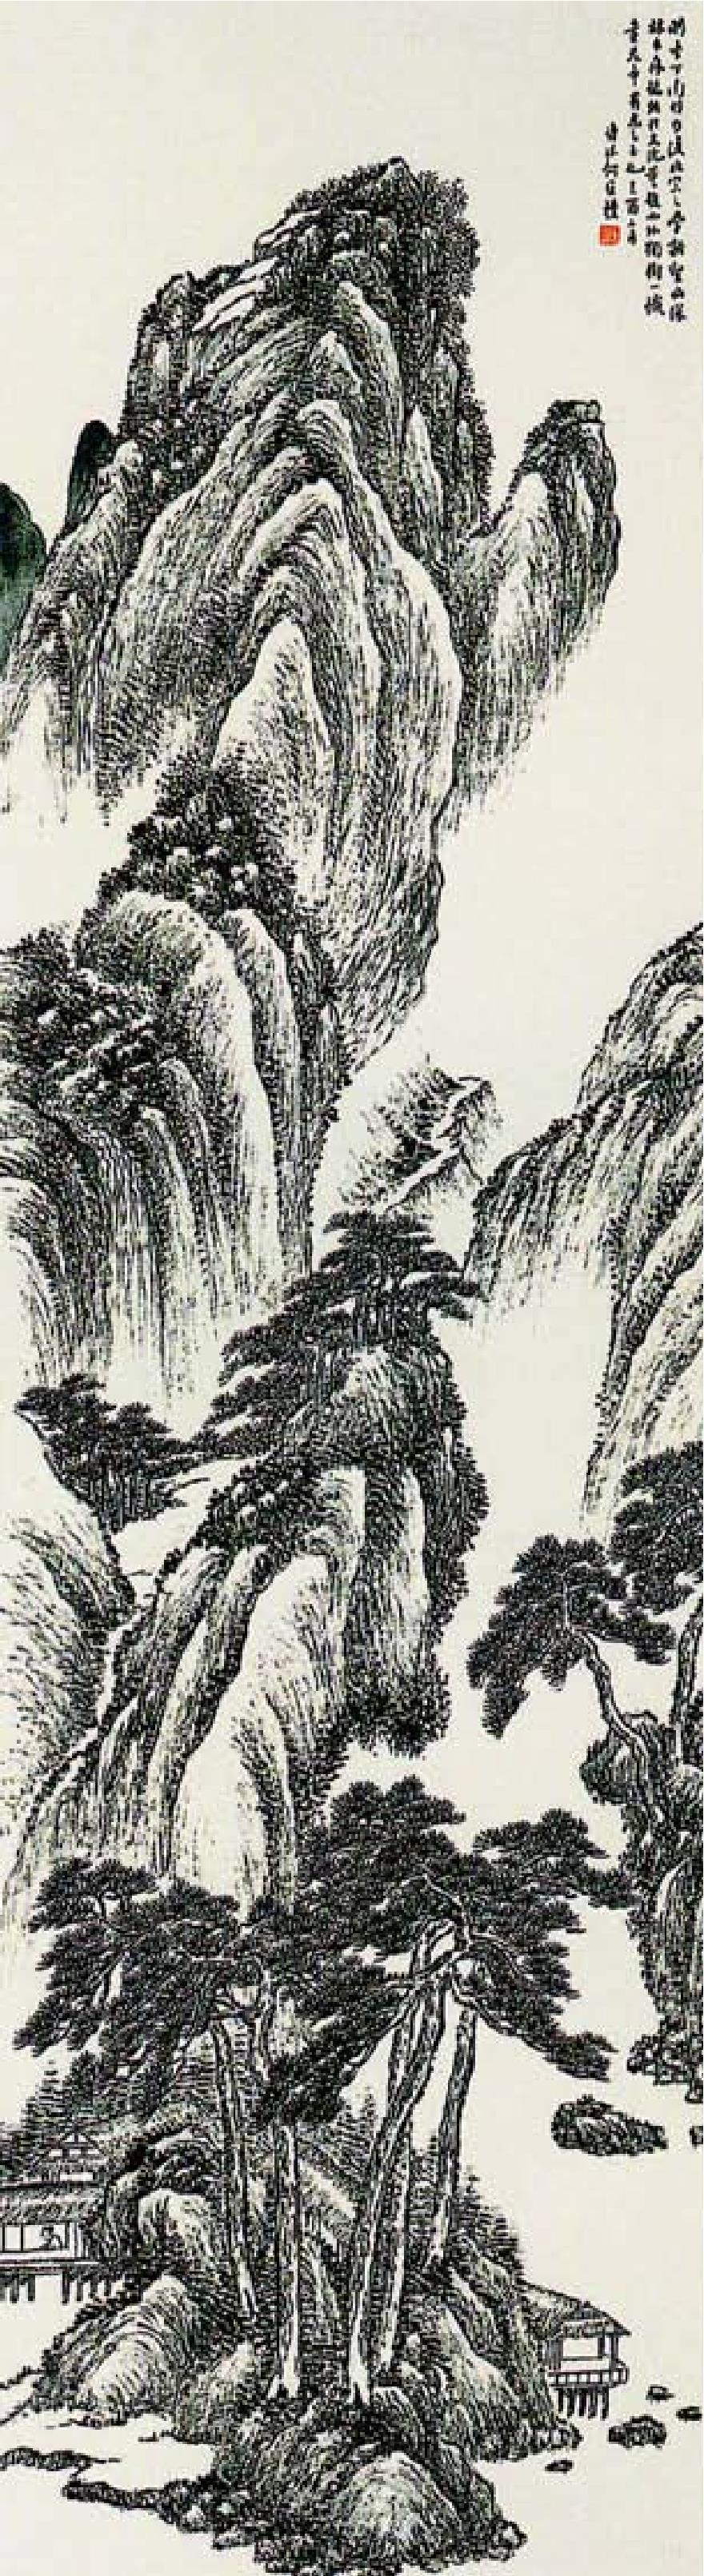 松岩飞瀑图